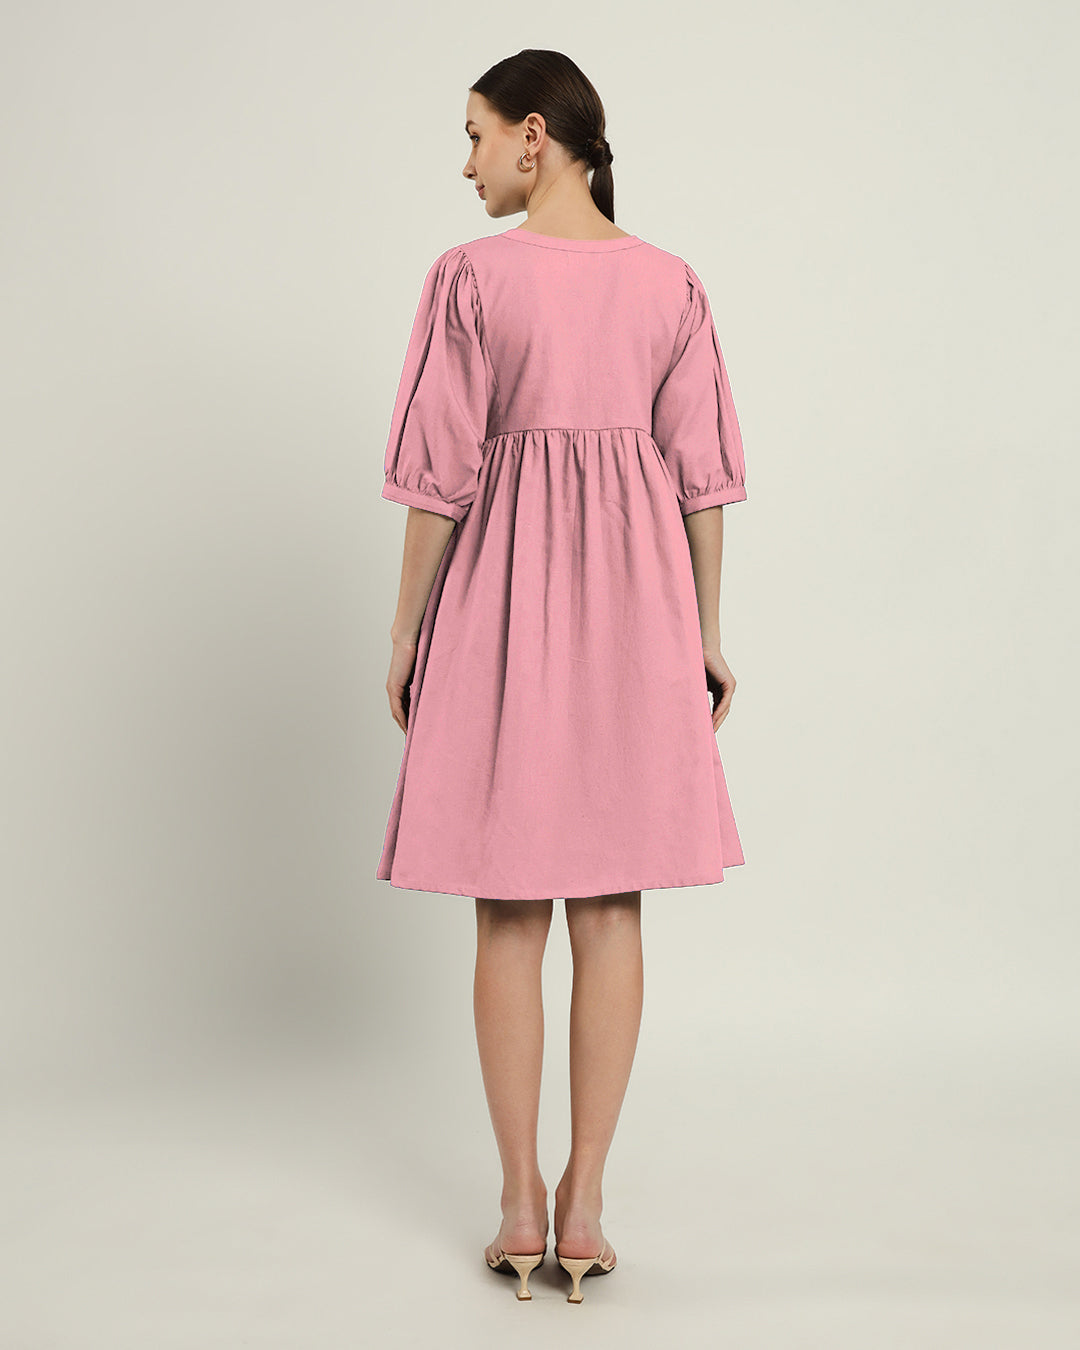 The Aira Fondant Pink Cotton Dress